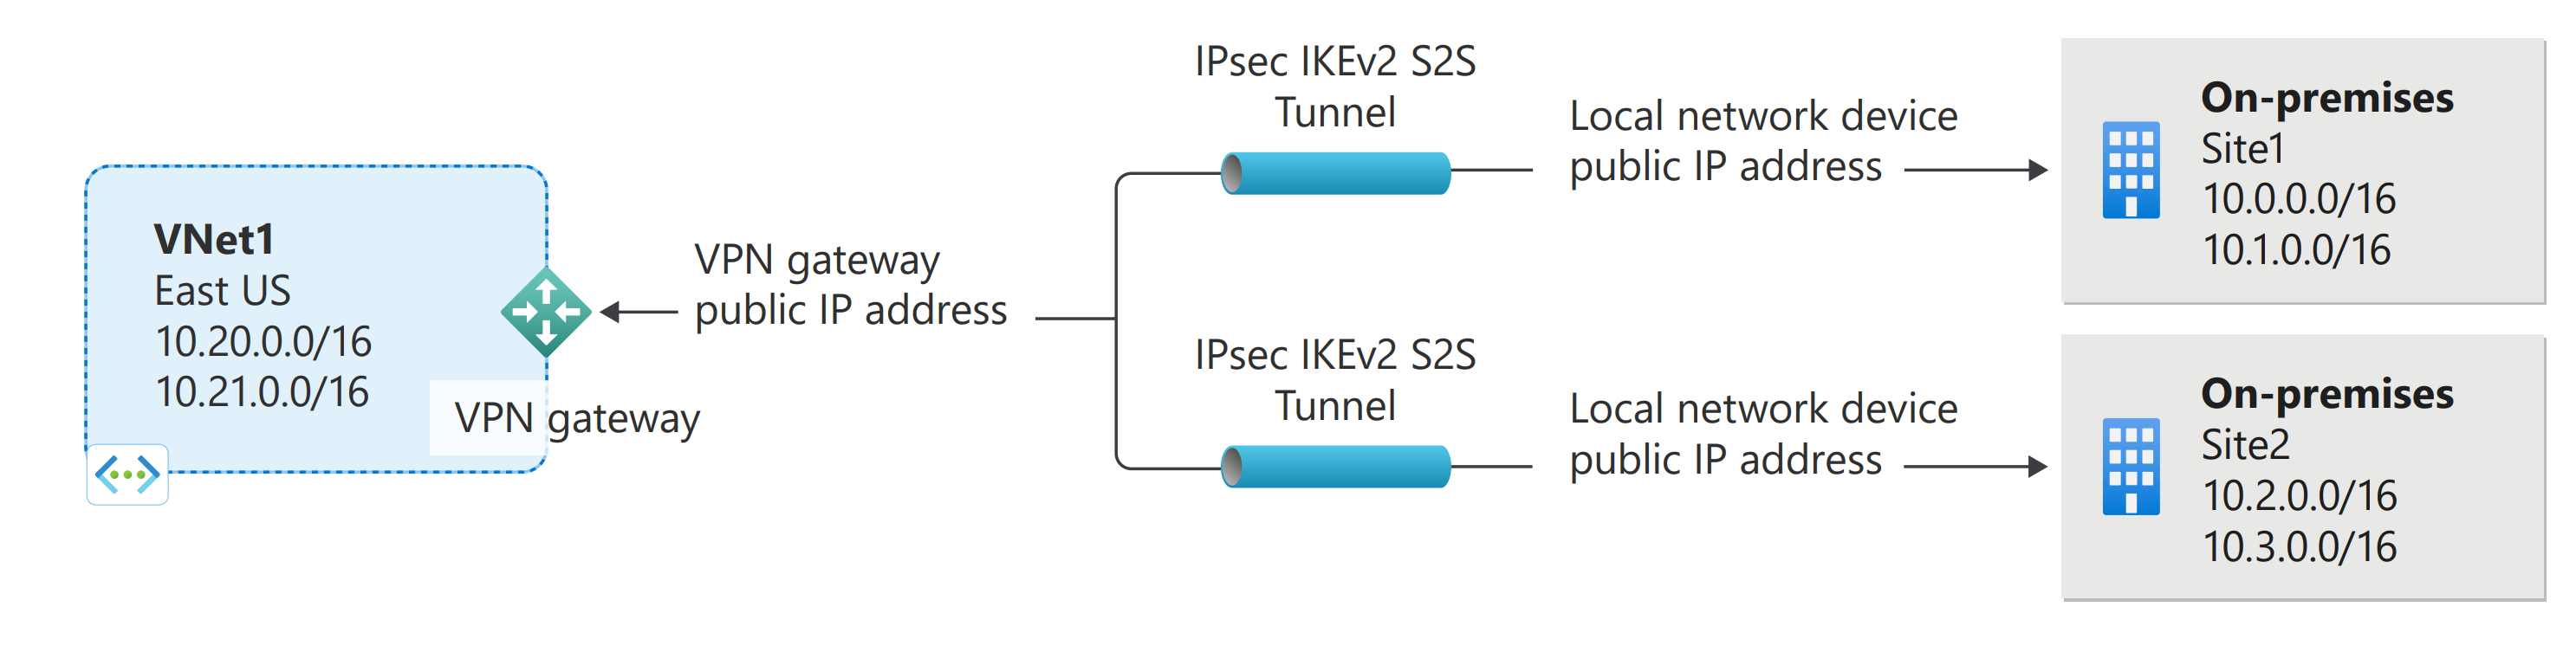 How many VPN gateways per VNet?